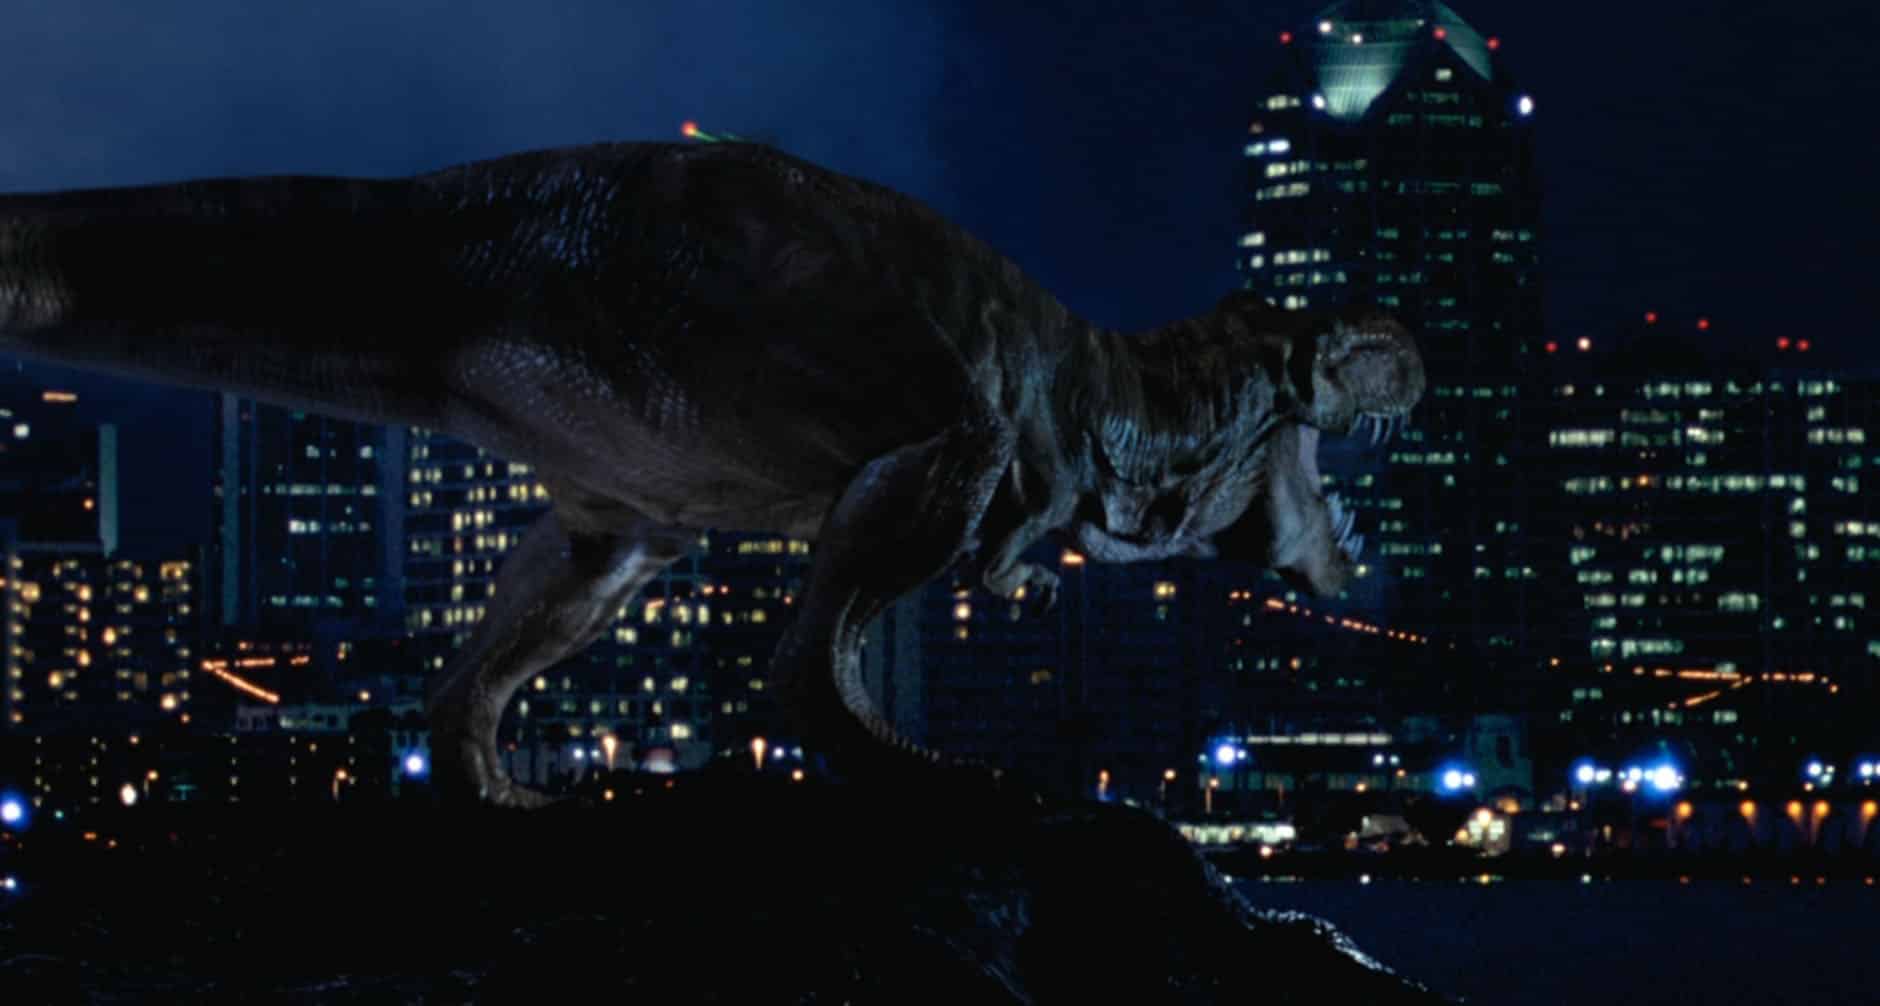 Il mondo perduto – Jurassic Park: recensione del film